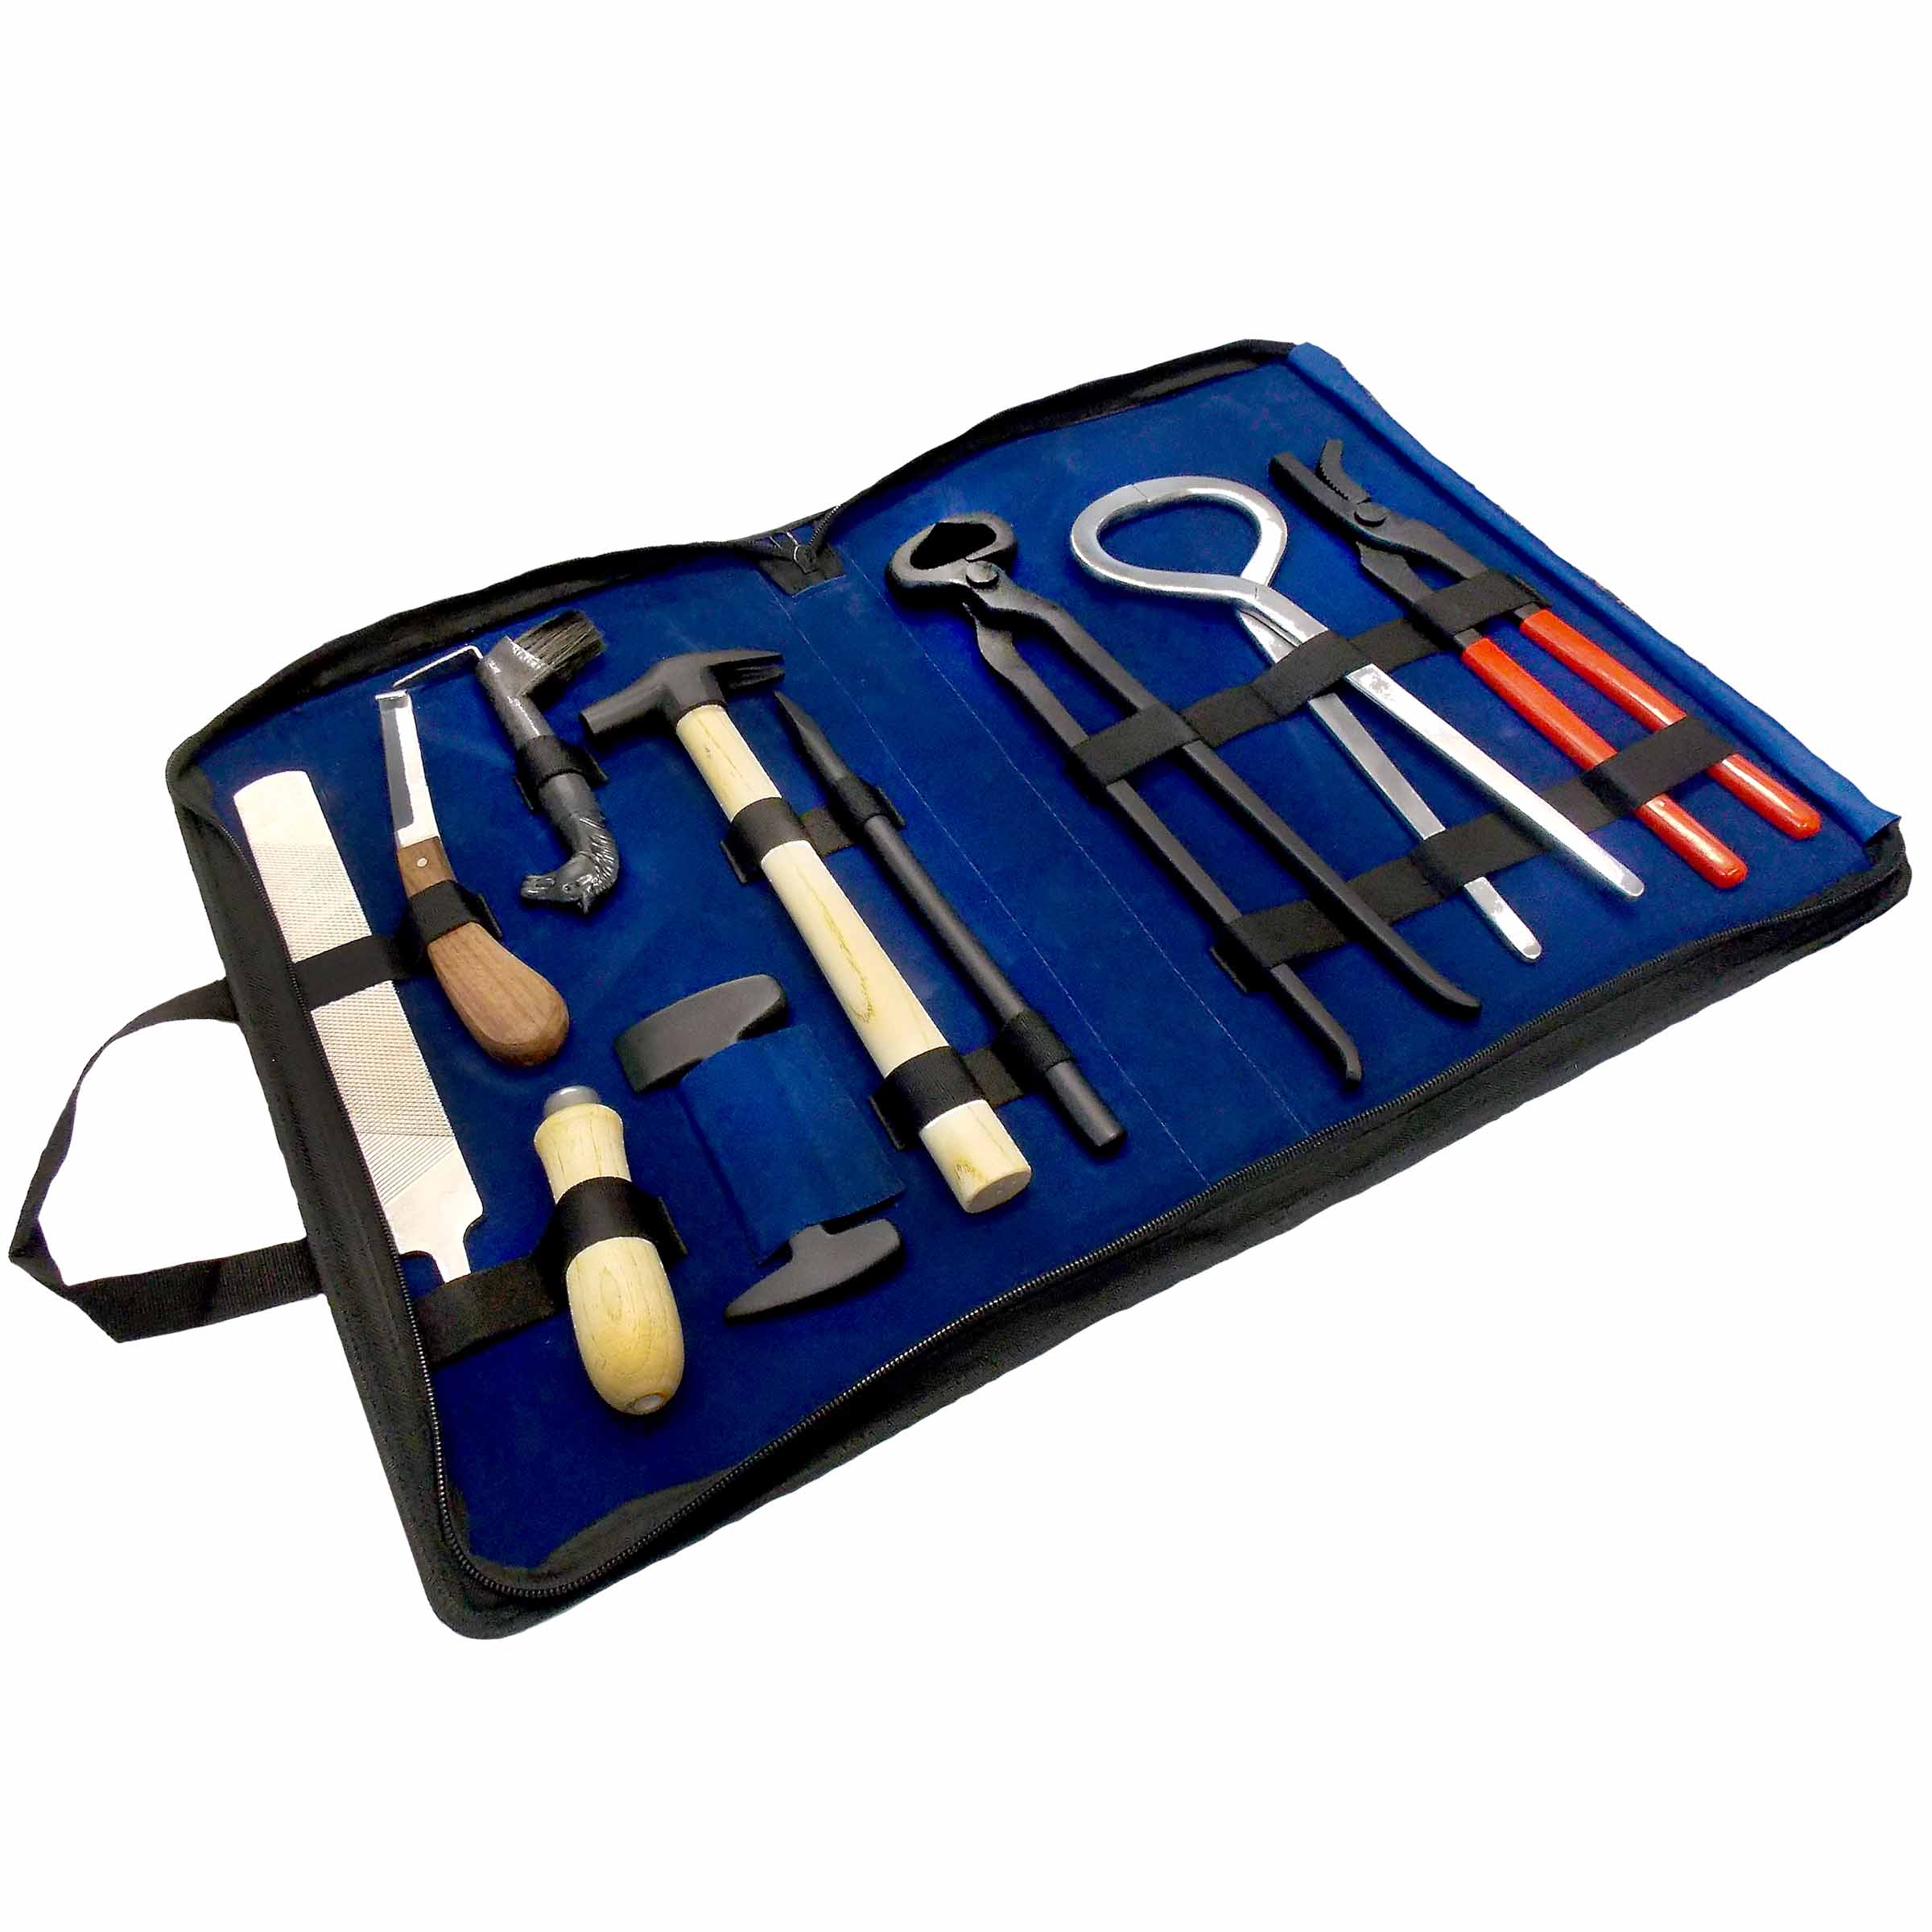 Kit d'outils pour maréchal-ferrant professionnel 10 pièces avec sac